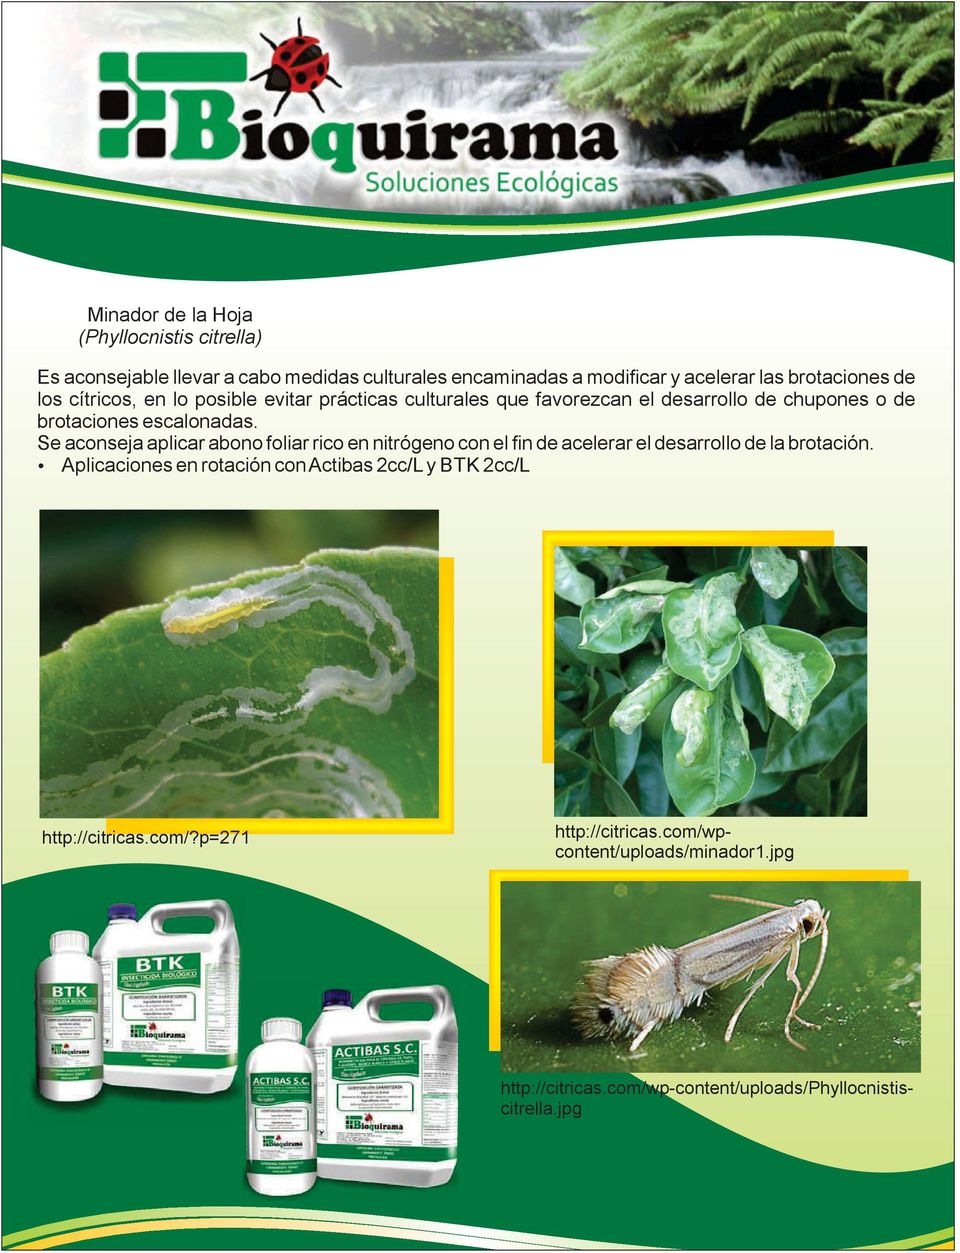 Se aconseja aplicar abono foliar rico en nitrógeno con el fin de acelerar el desarrollo de la brotación.